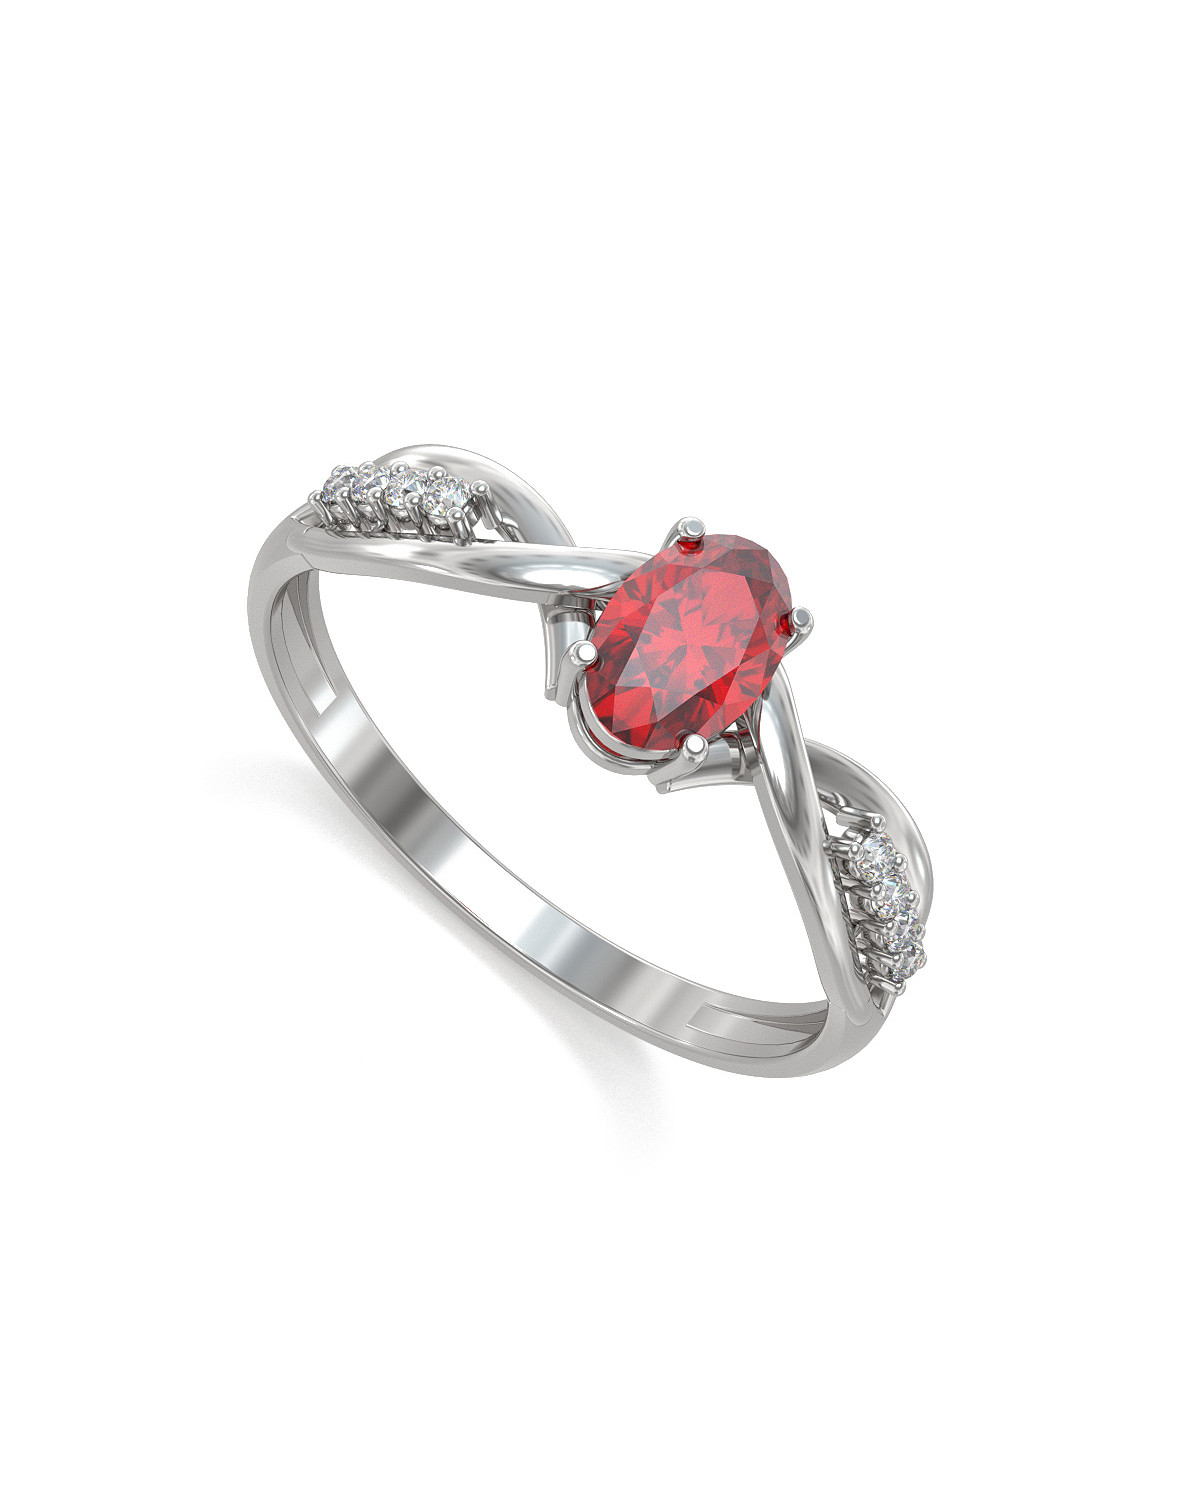 Bague de fiançailles rubis épaulée 8 diamants sur anneau d'argent rhodié